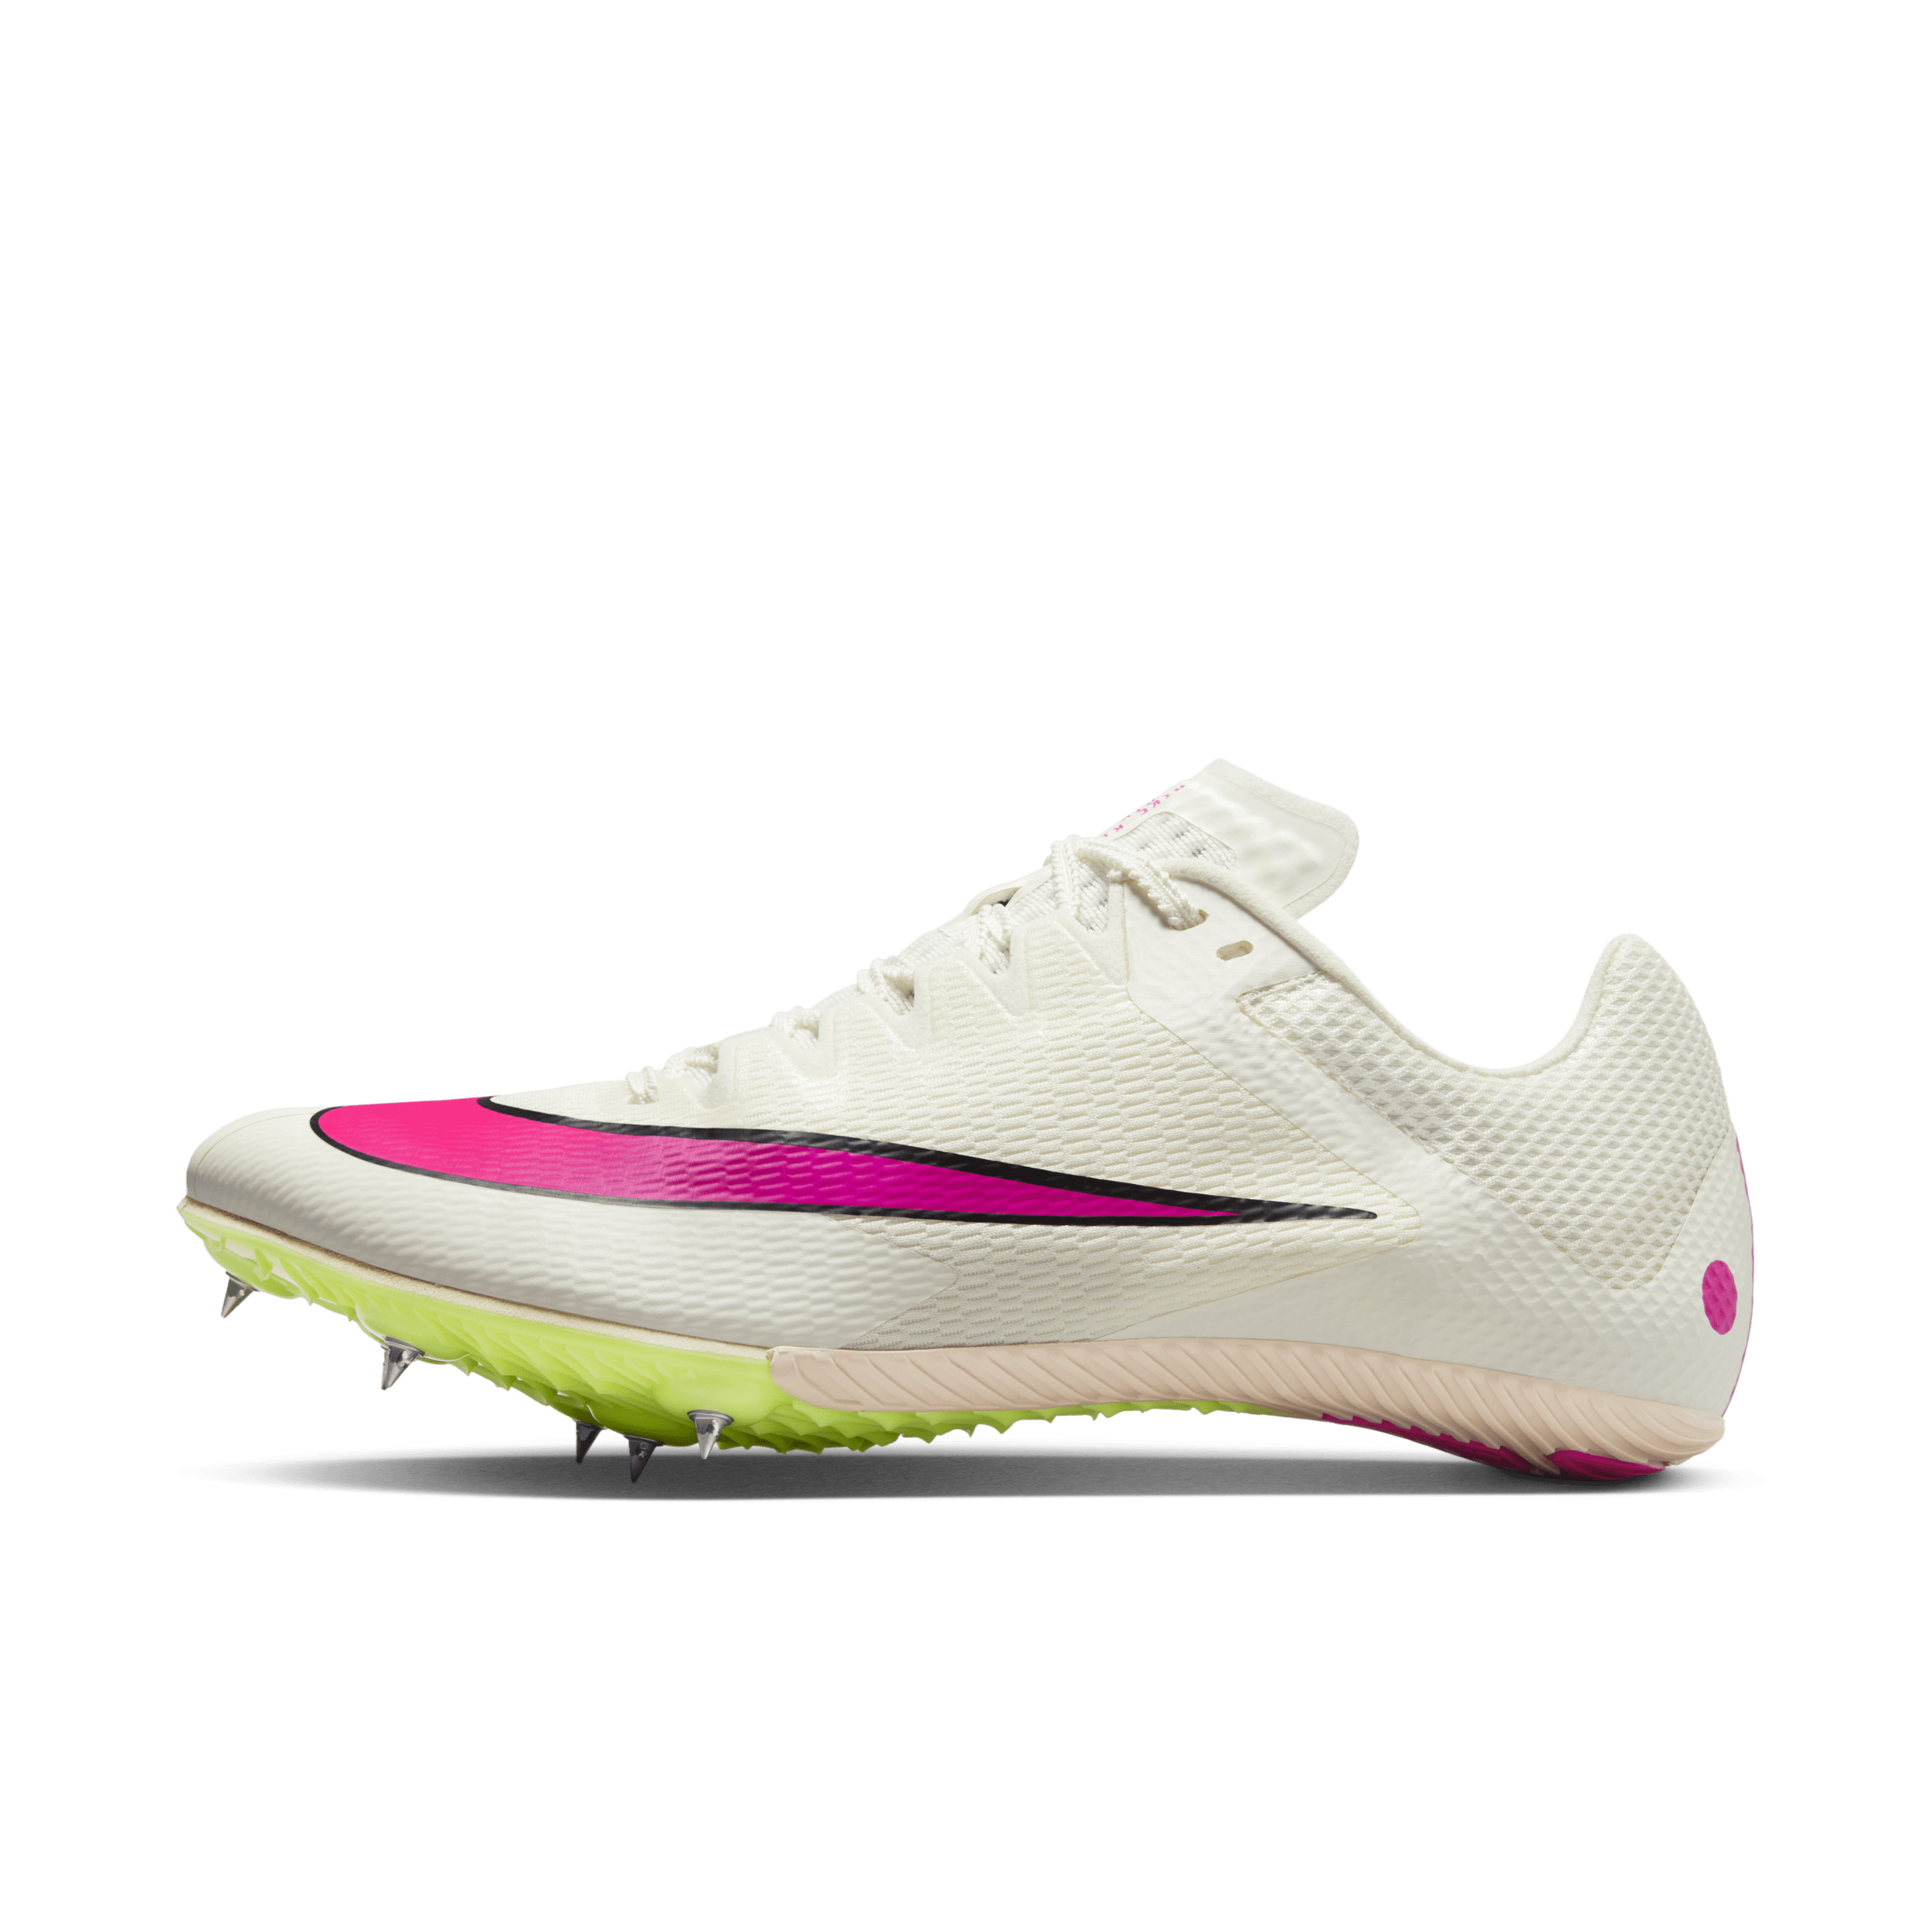 Scarpa chiodata per lo sprint Nike Rival Sprint - Bianco